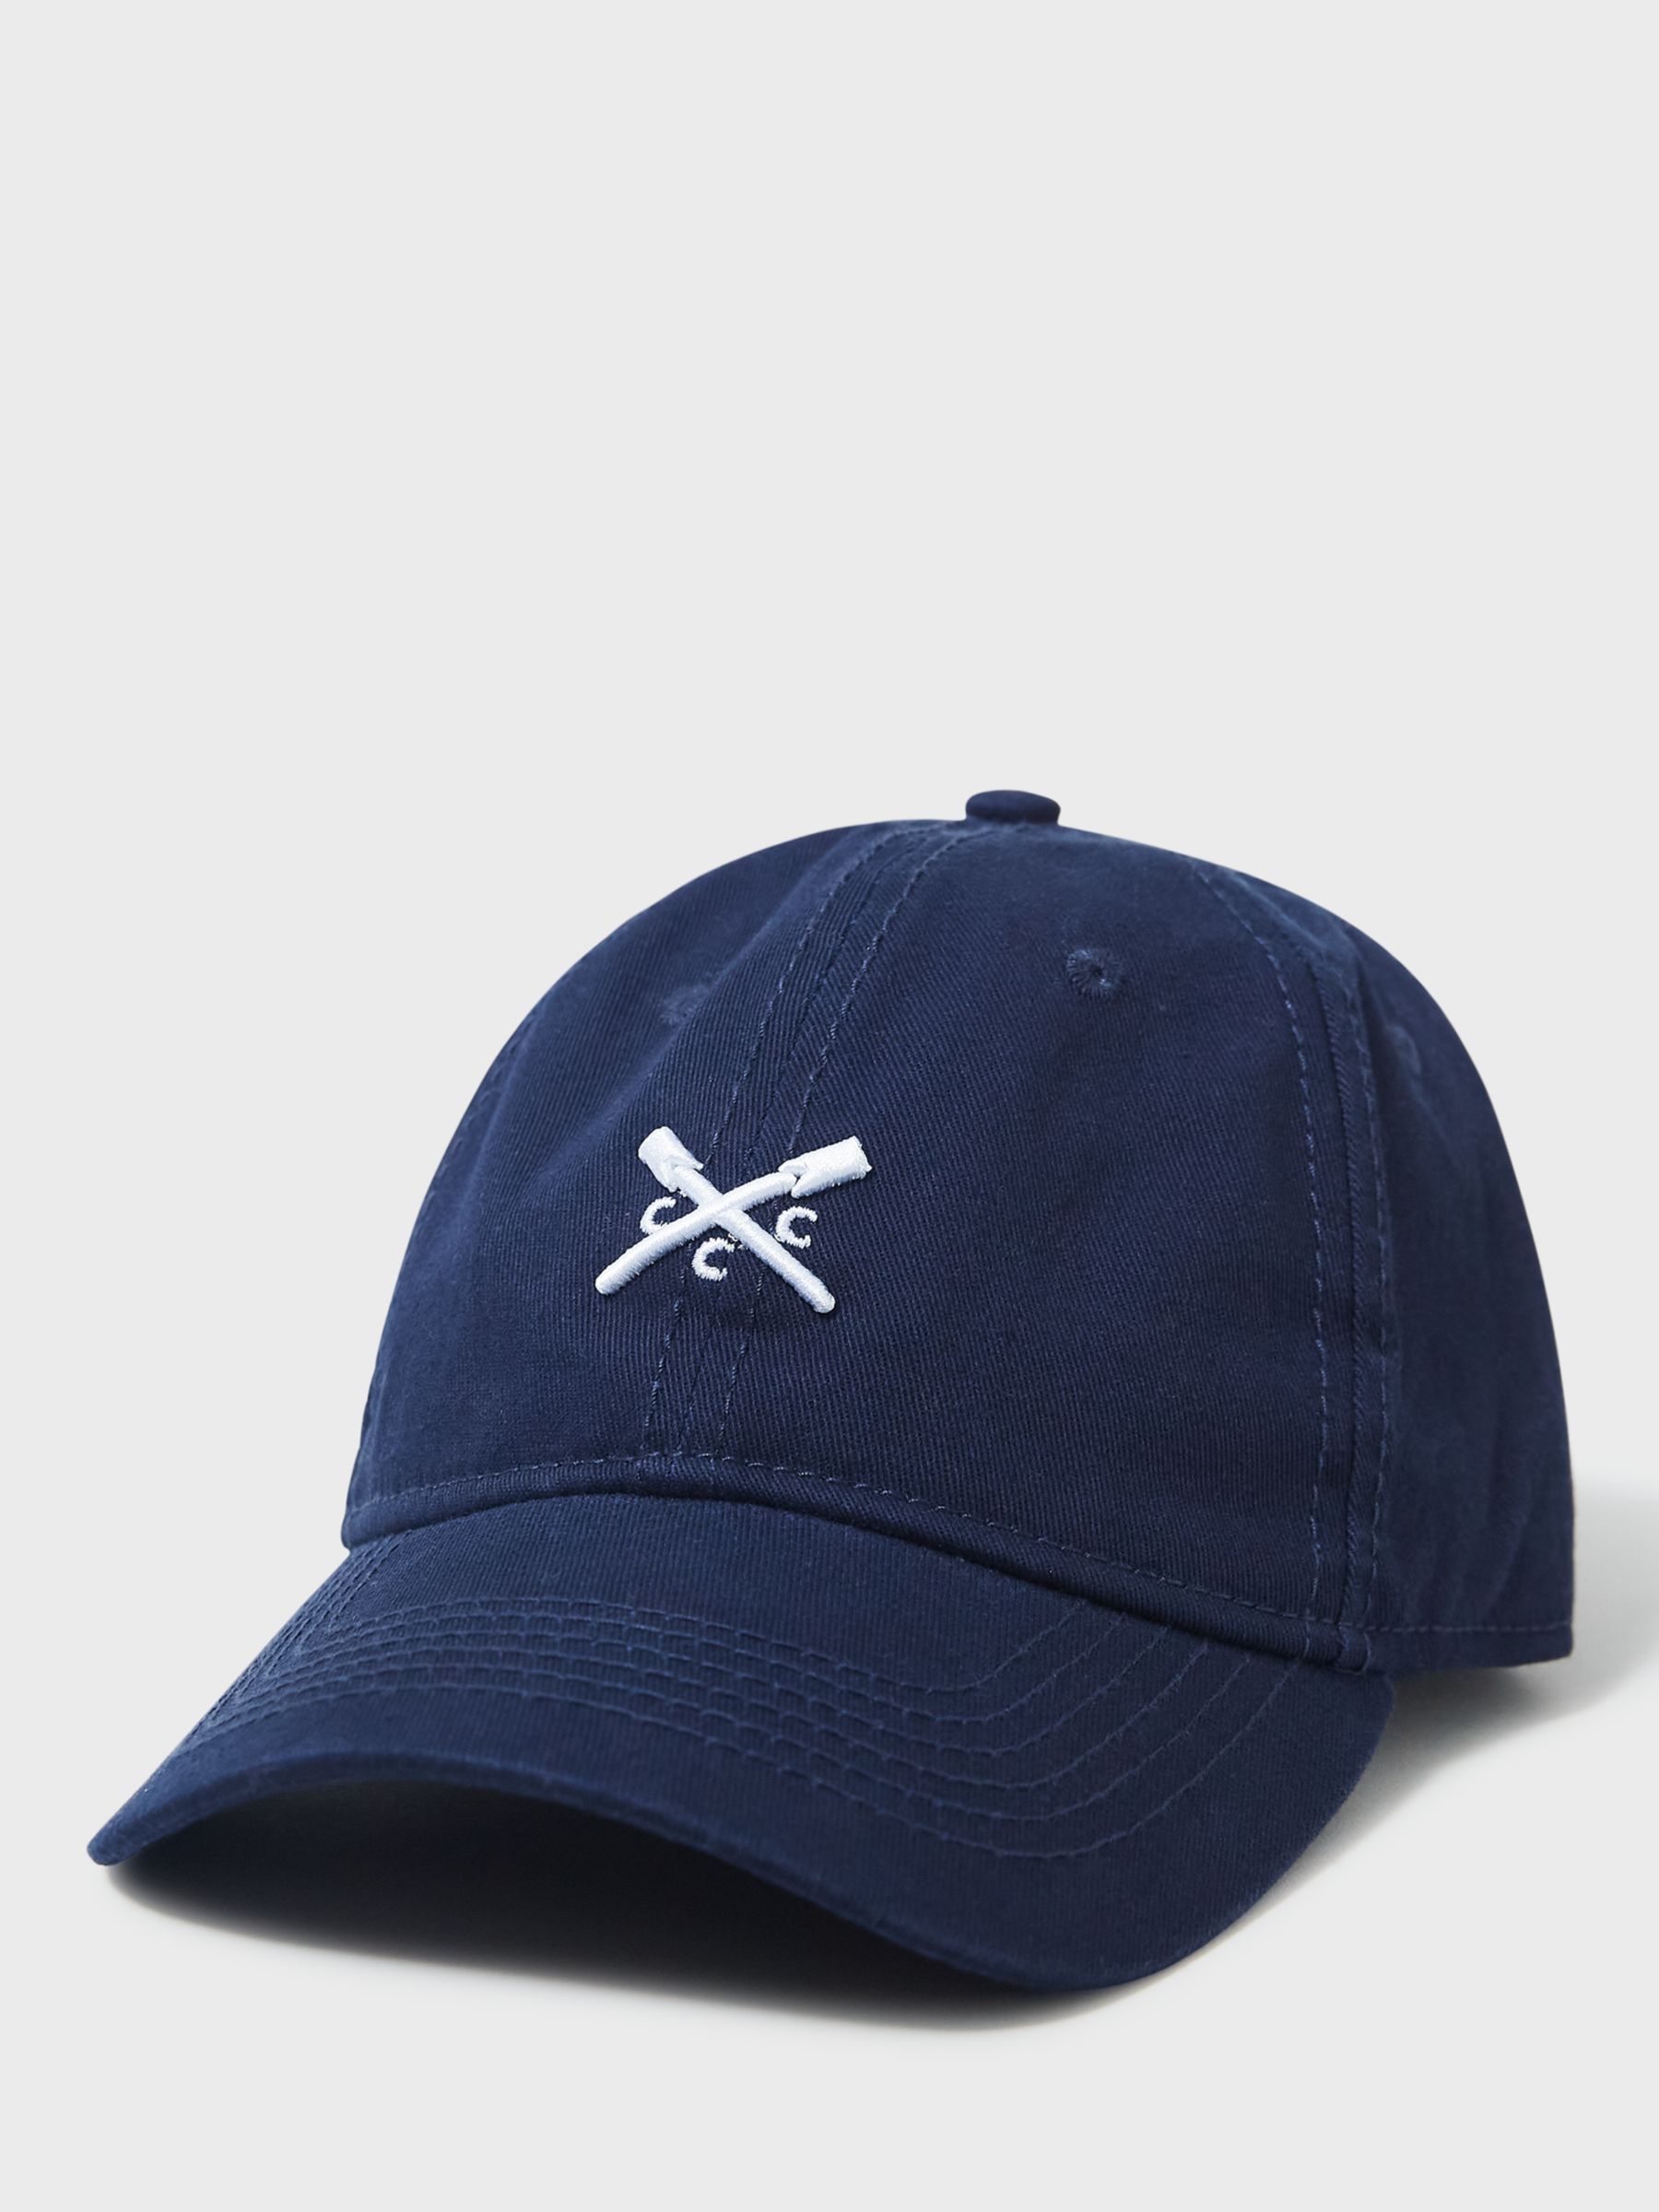 Crew Clothing Logo Cap, Navy Blue, One Size